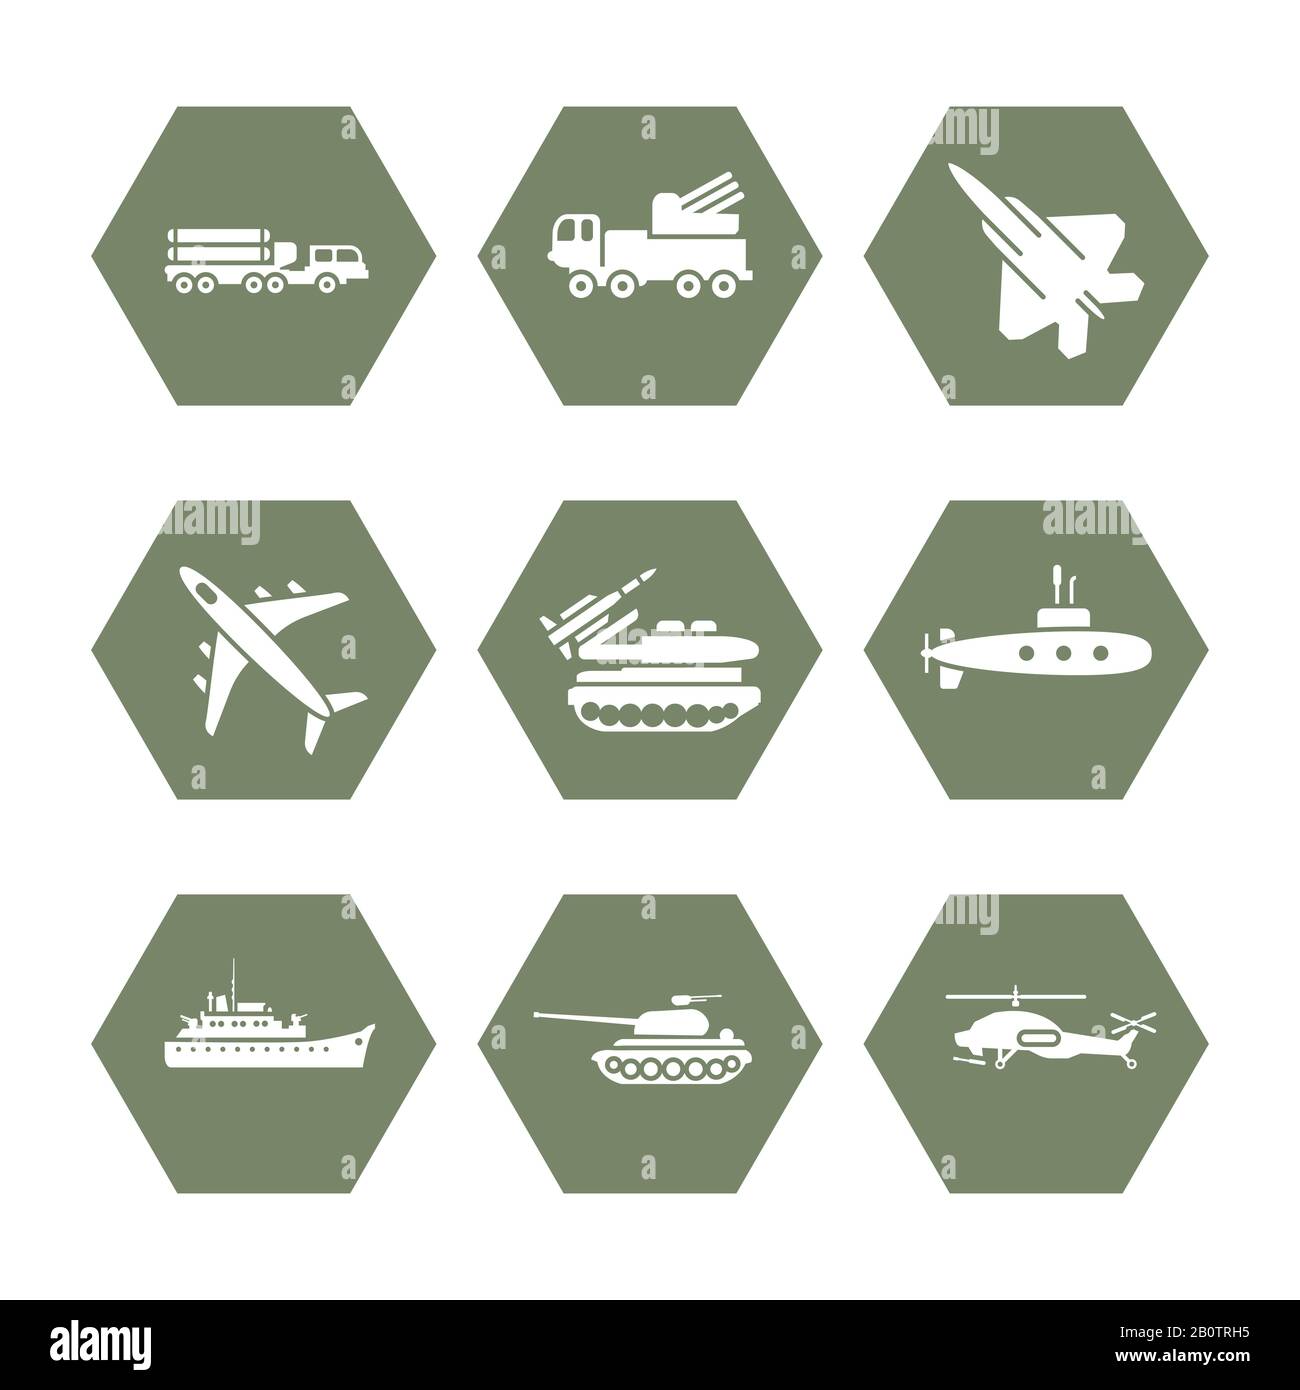 Militärtransport-Ikonen Set - Armee-Ikonen-Design. Armee-Transport für den Krieg, Vektorillustration Stock Vektor